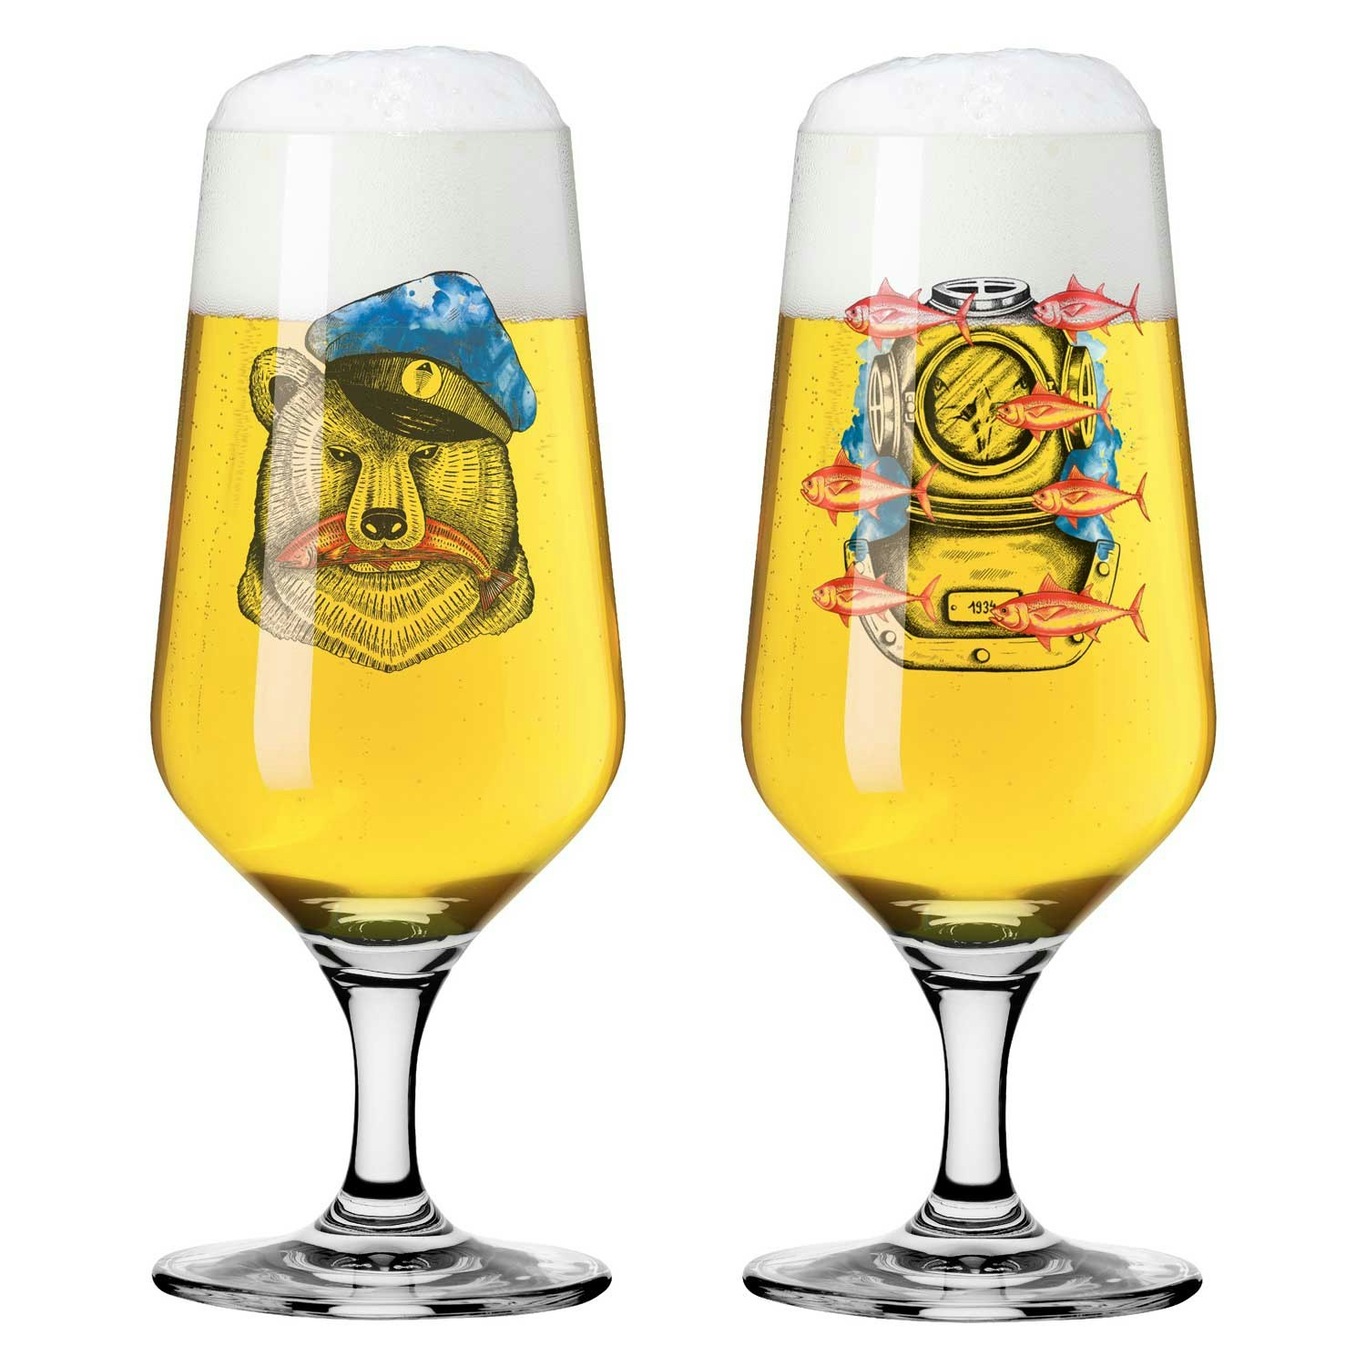 Brauchzeit Beer Glass 37 cl 2-pack, #9 & 10